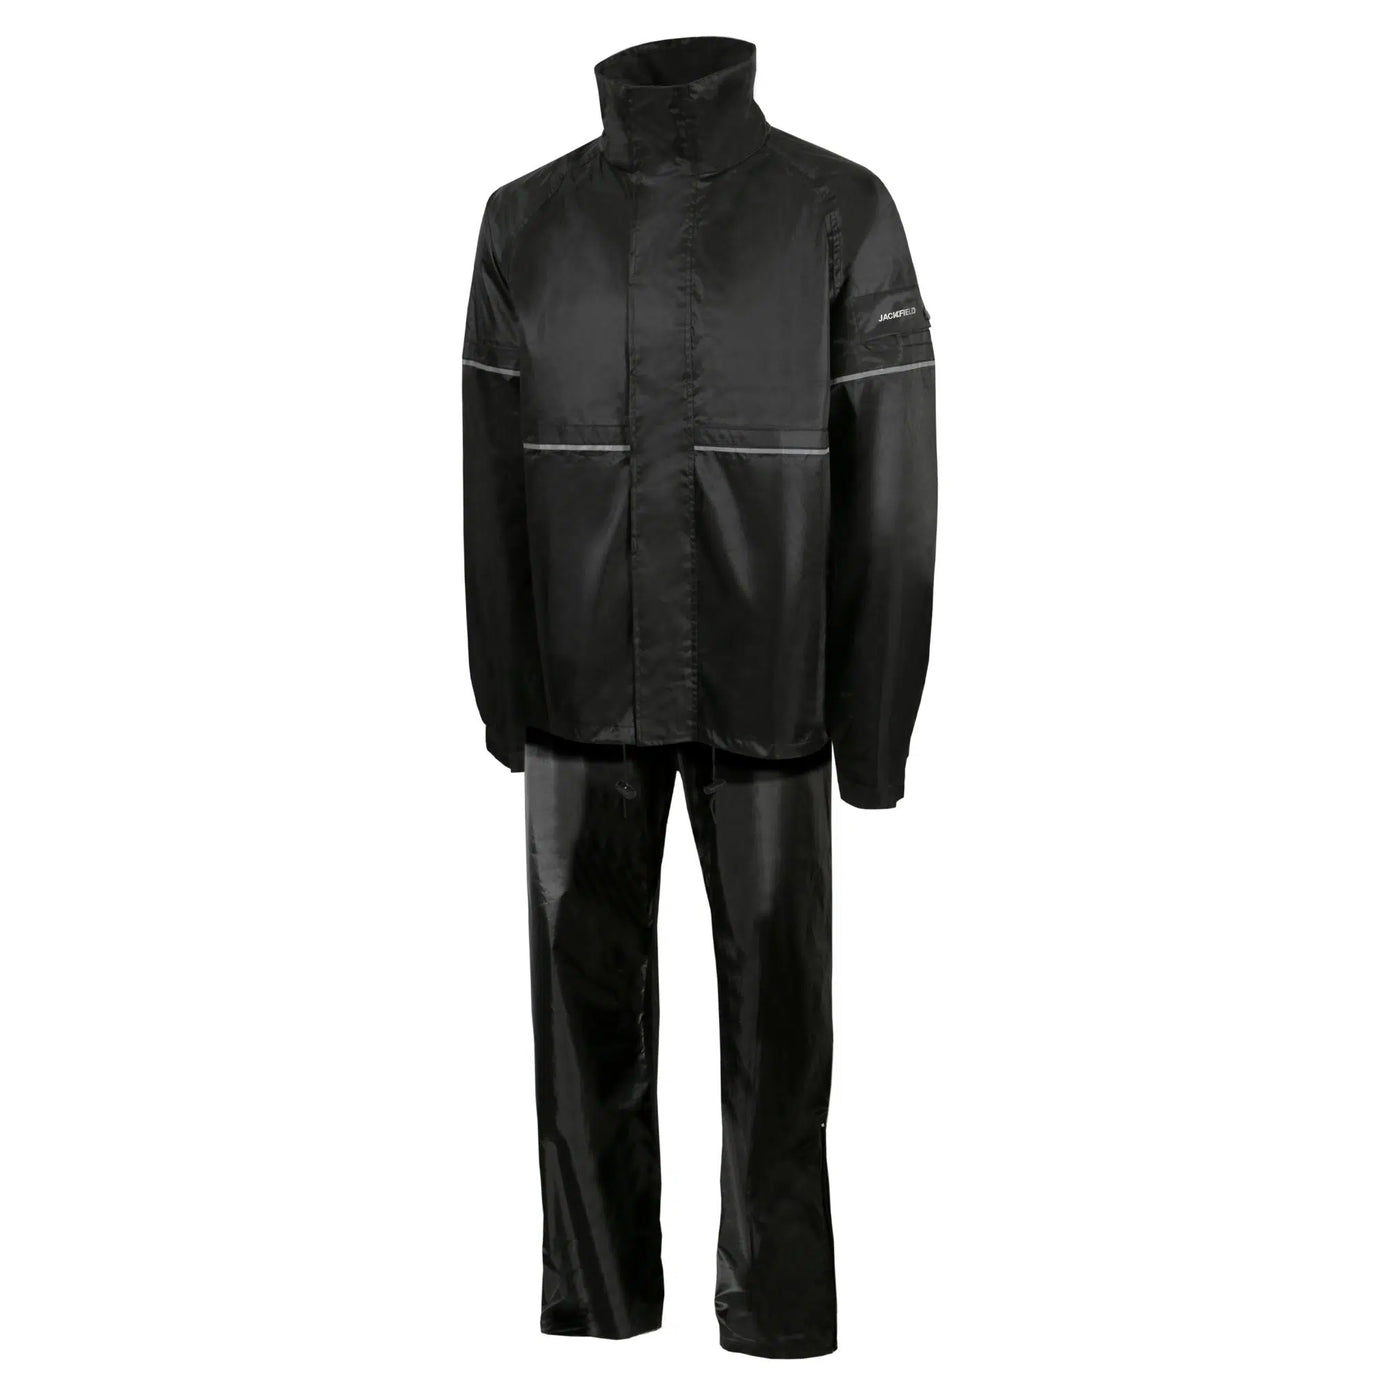 Jackfield Polyester Rain Suit